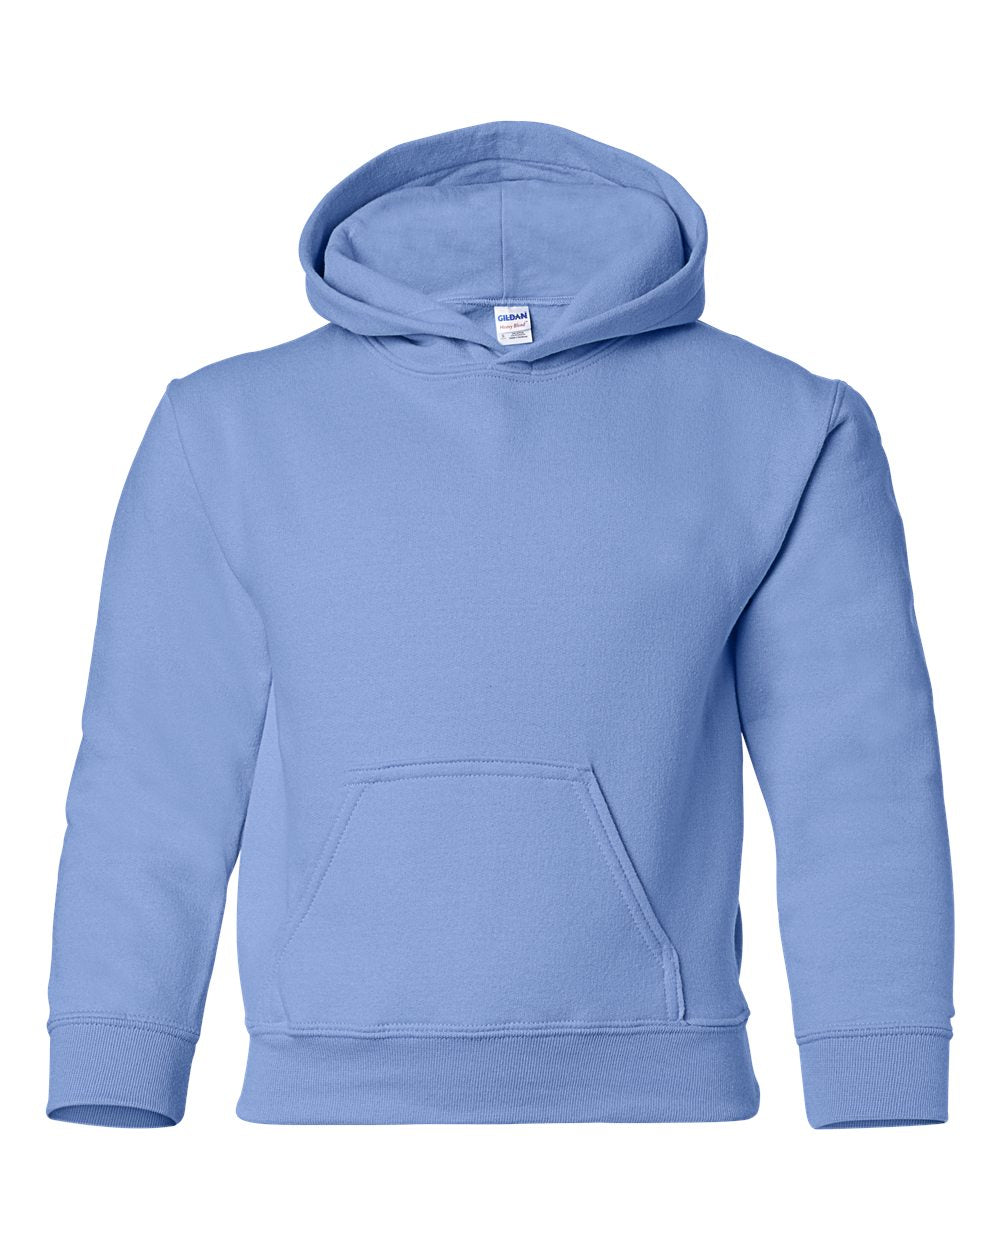 Gildan Youth Hooded Sweatshirt